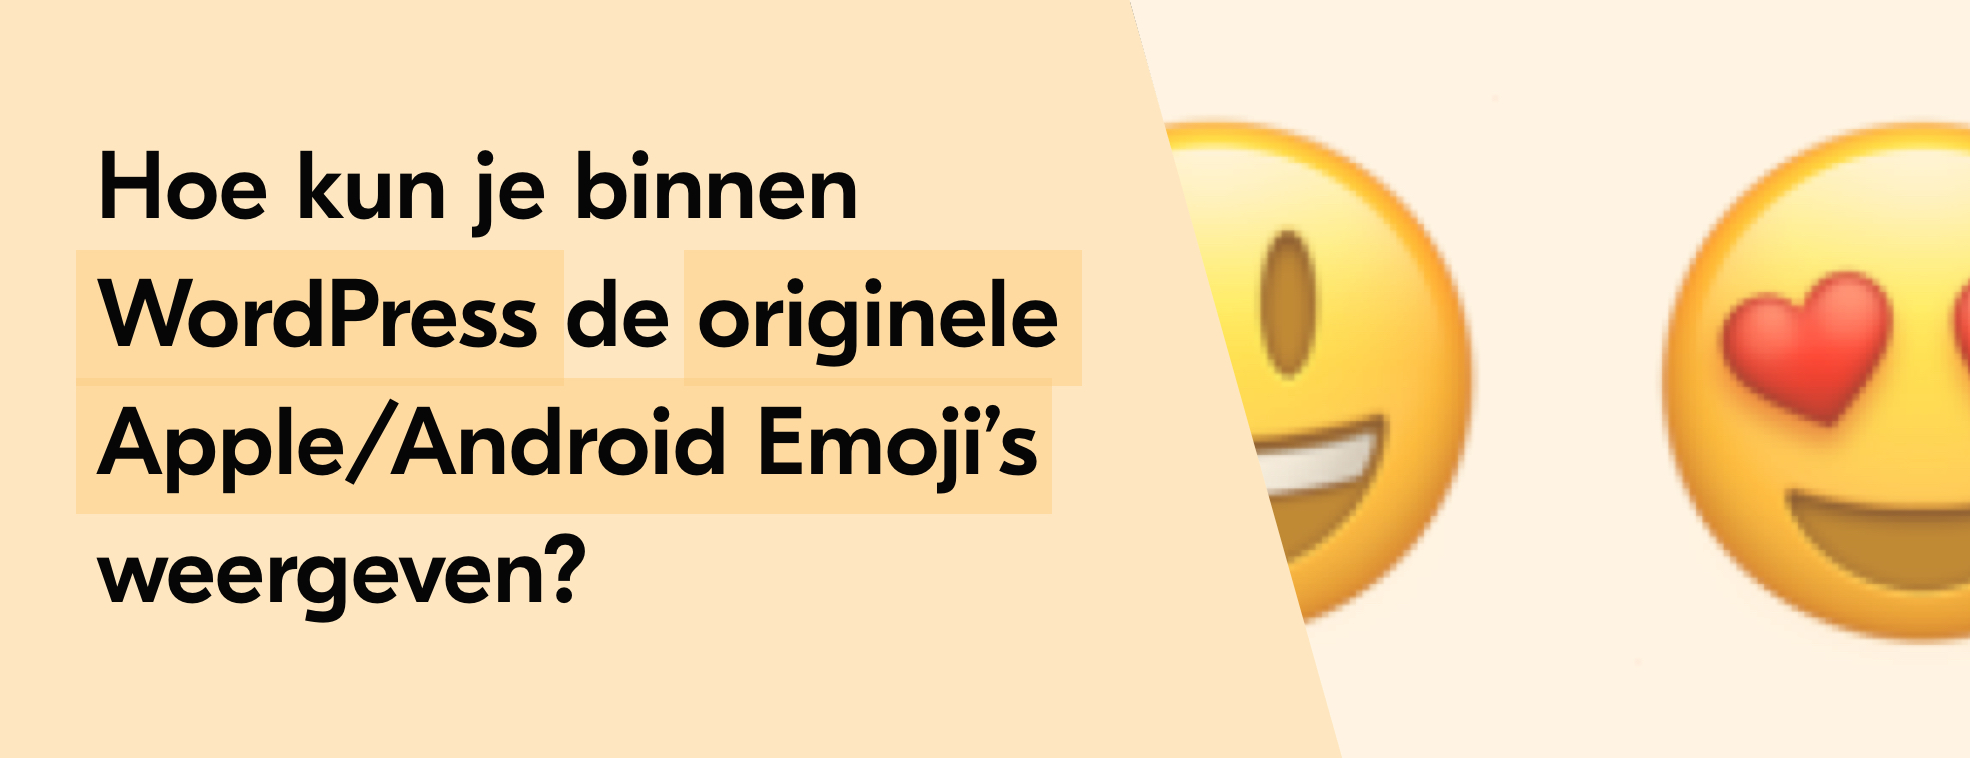 Hoe kun je binnen WordPress de originele Apple/Android Emoji’s weergeven?